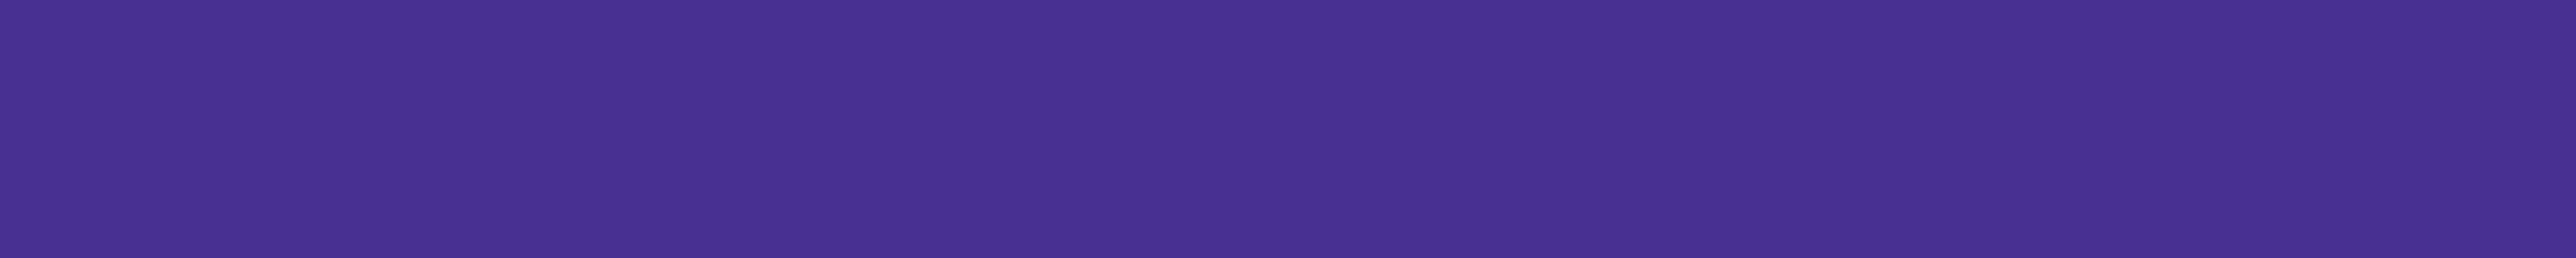 Astound purple background banner